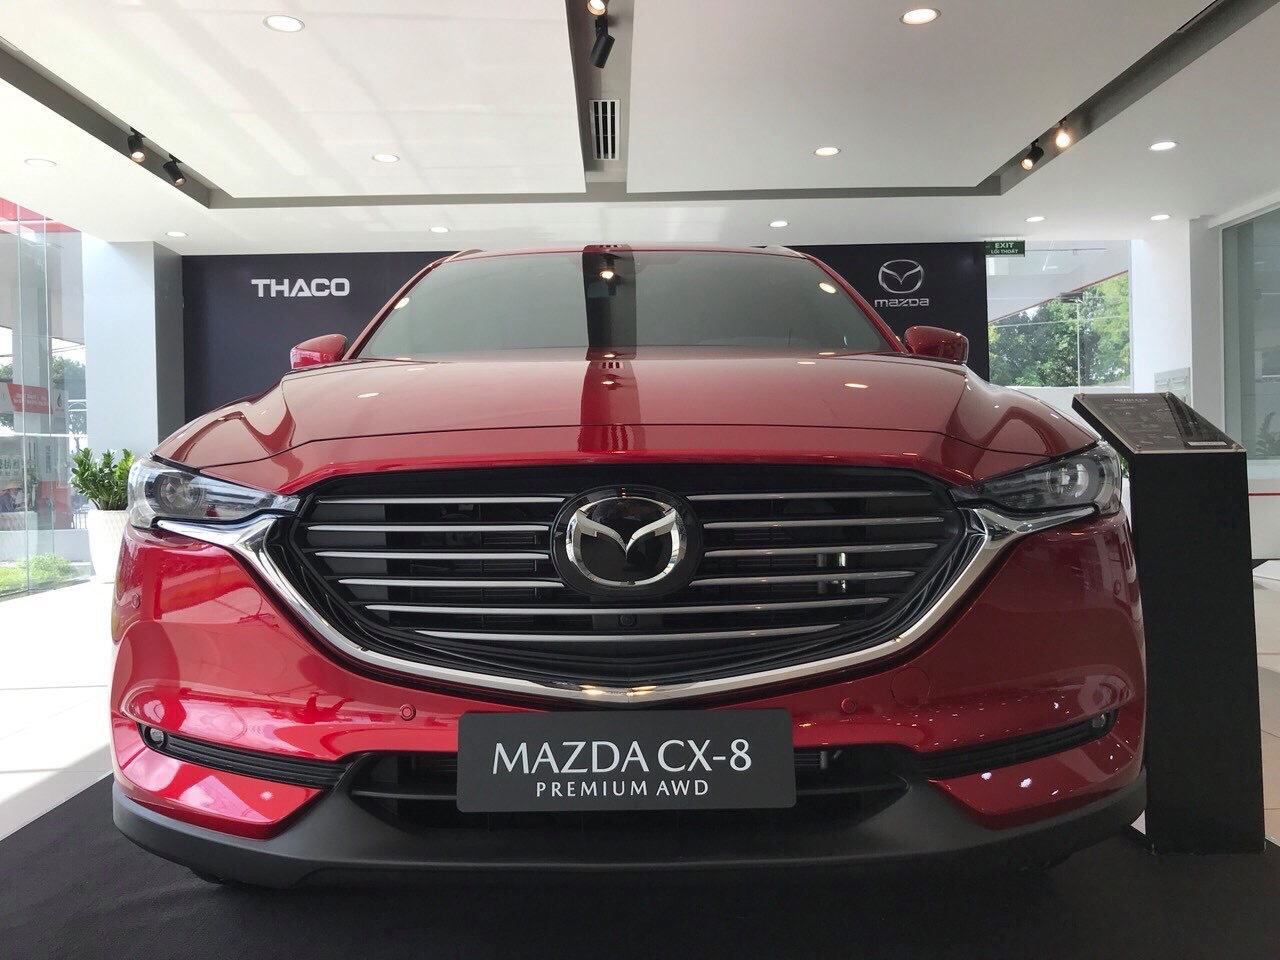 Mazda Mazda khác 2019 - CX8 - giá cực tốt - nhiều quà tặng hấp dẫn